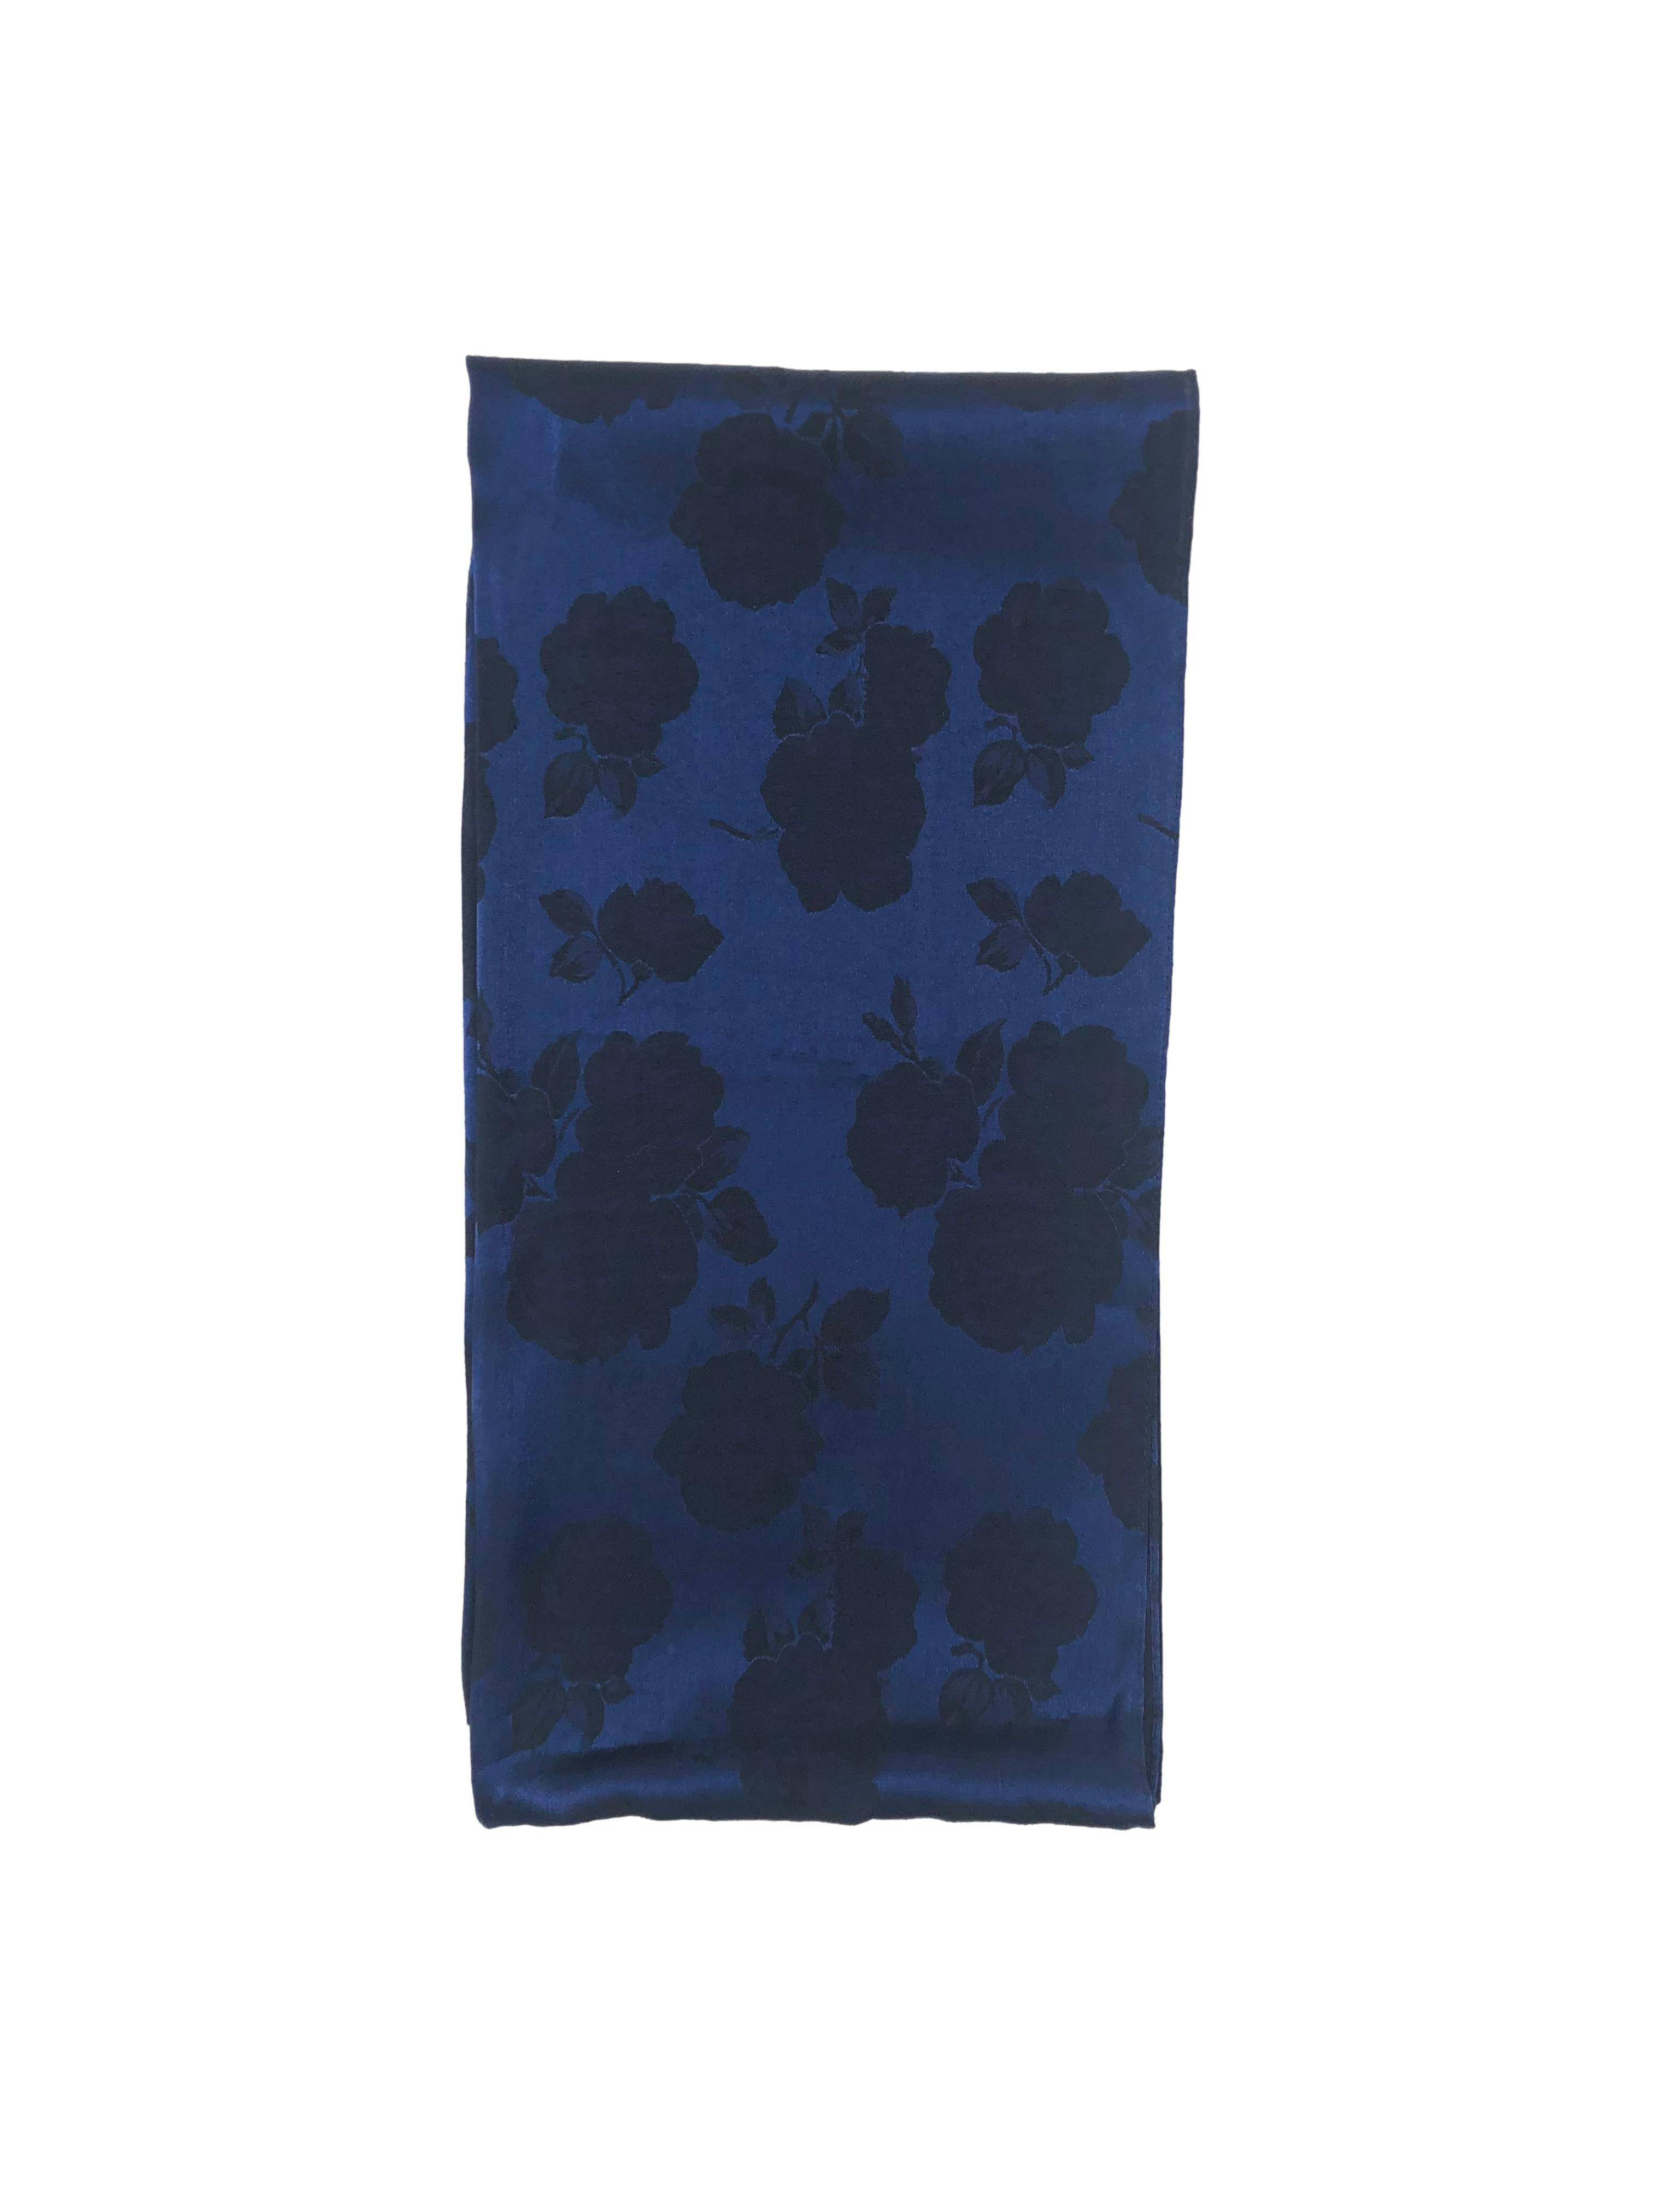 Pañuelo azul satinado con flores oscuras al tono. Medidas 46x196cm